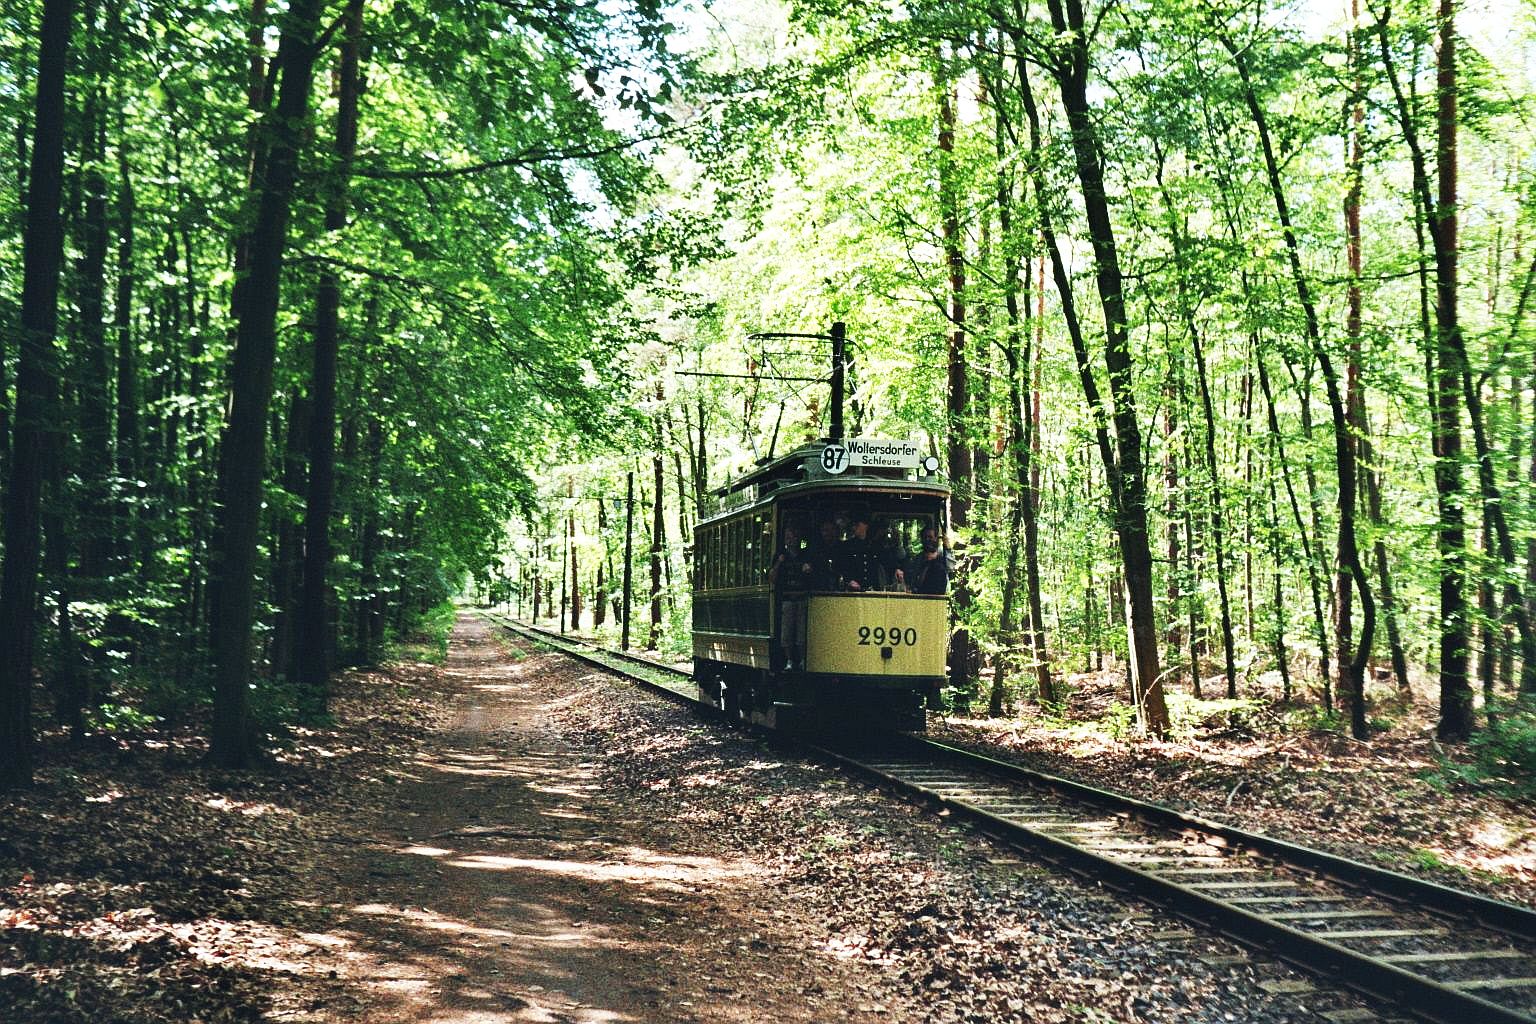 Woltersdorfer Straßenbahn__Hier ist es wieder eingleisig, aber immer noch viel Wald ...__23-05-2009